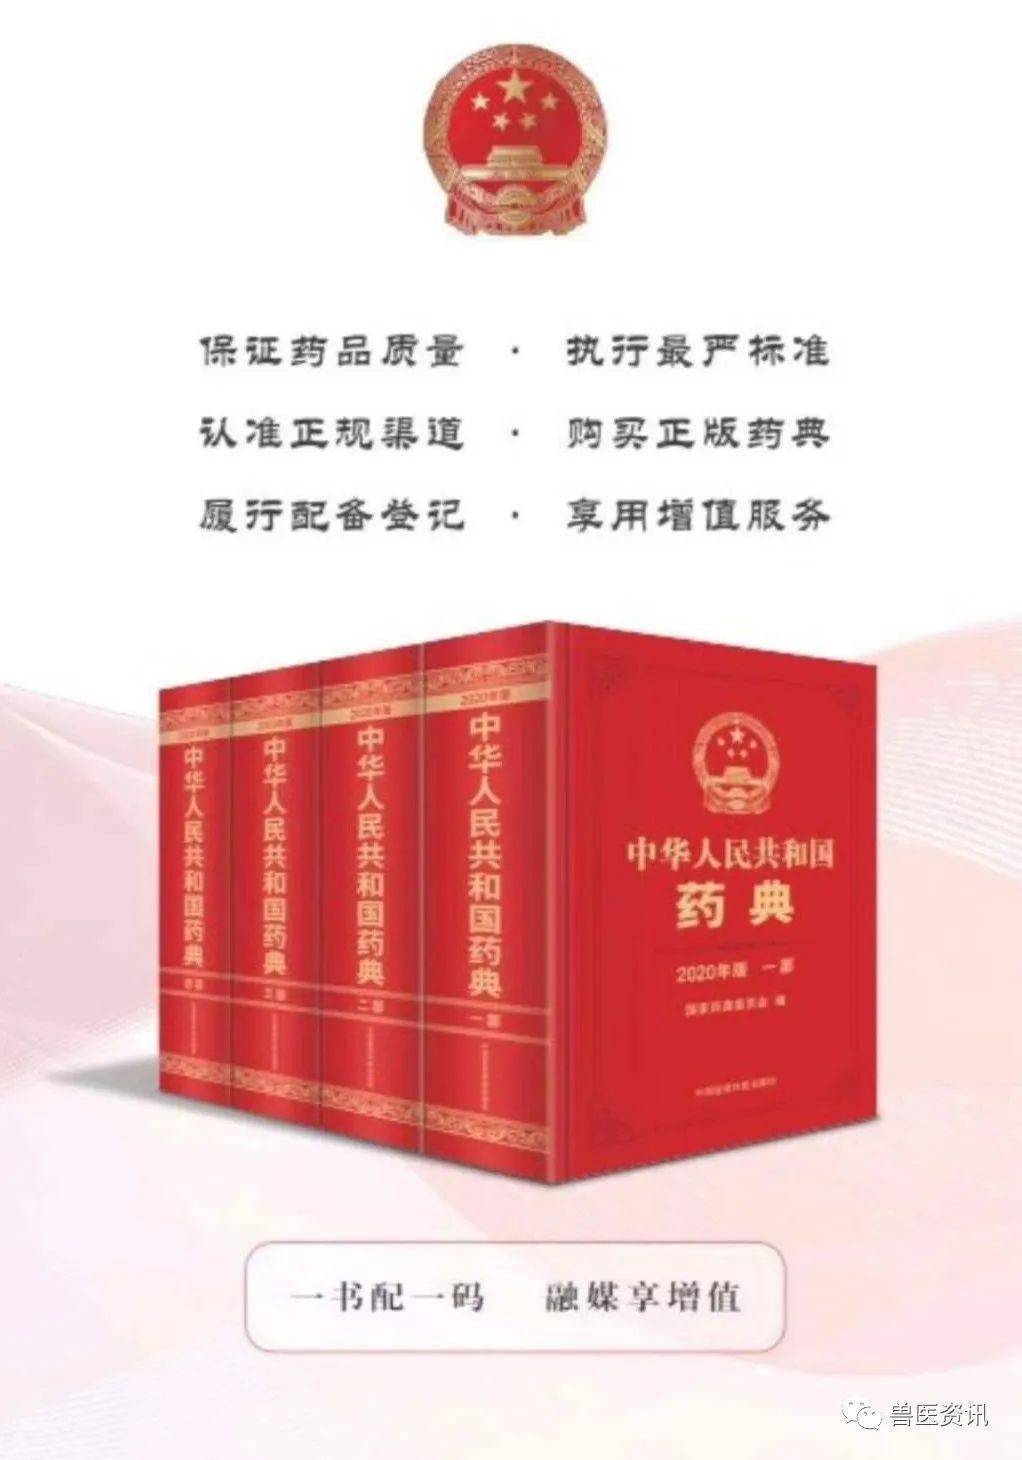 中华人民共和国药典(2020版)正式出版发行!